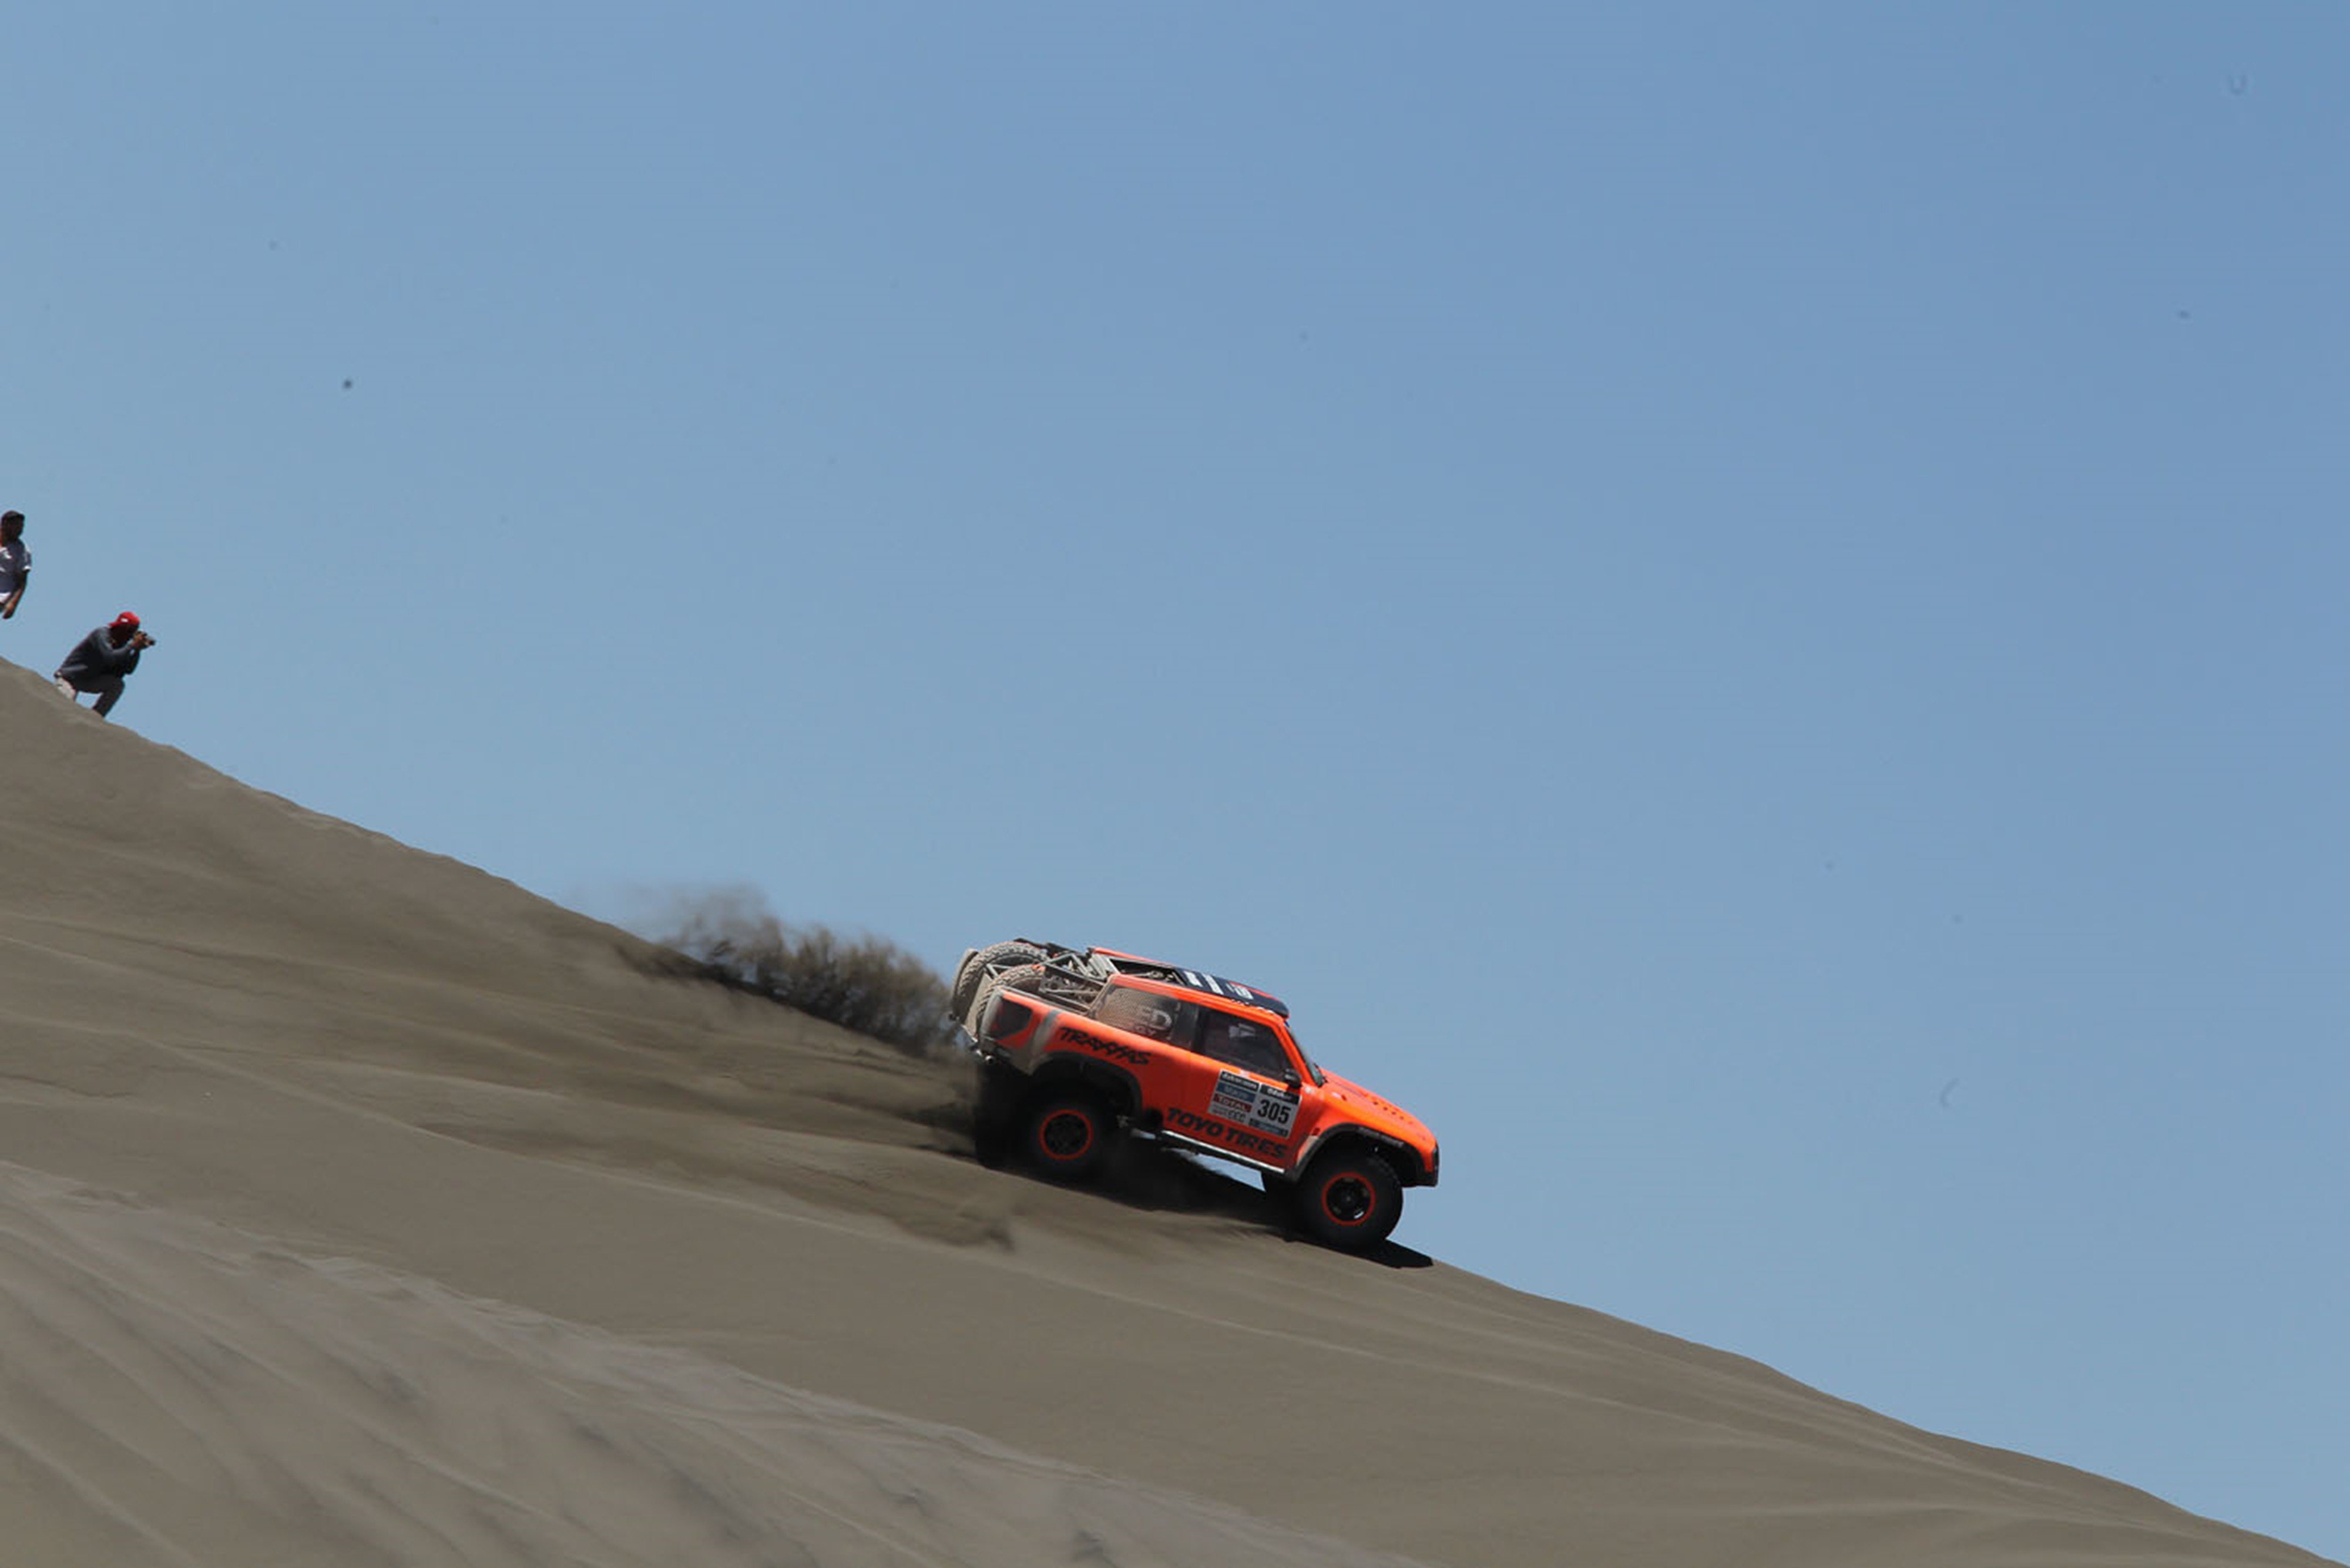 rally, Dakar, Race, Desert, Racing, Sand, Gordon, Ss2, 276, 4000x2669 Wallpaper